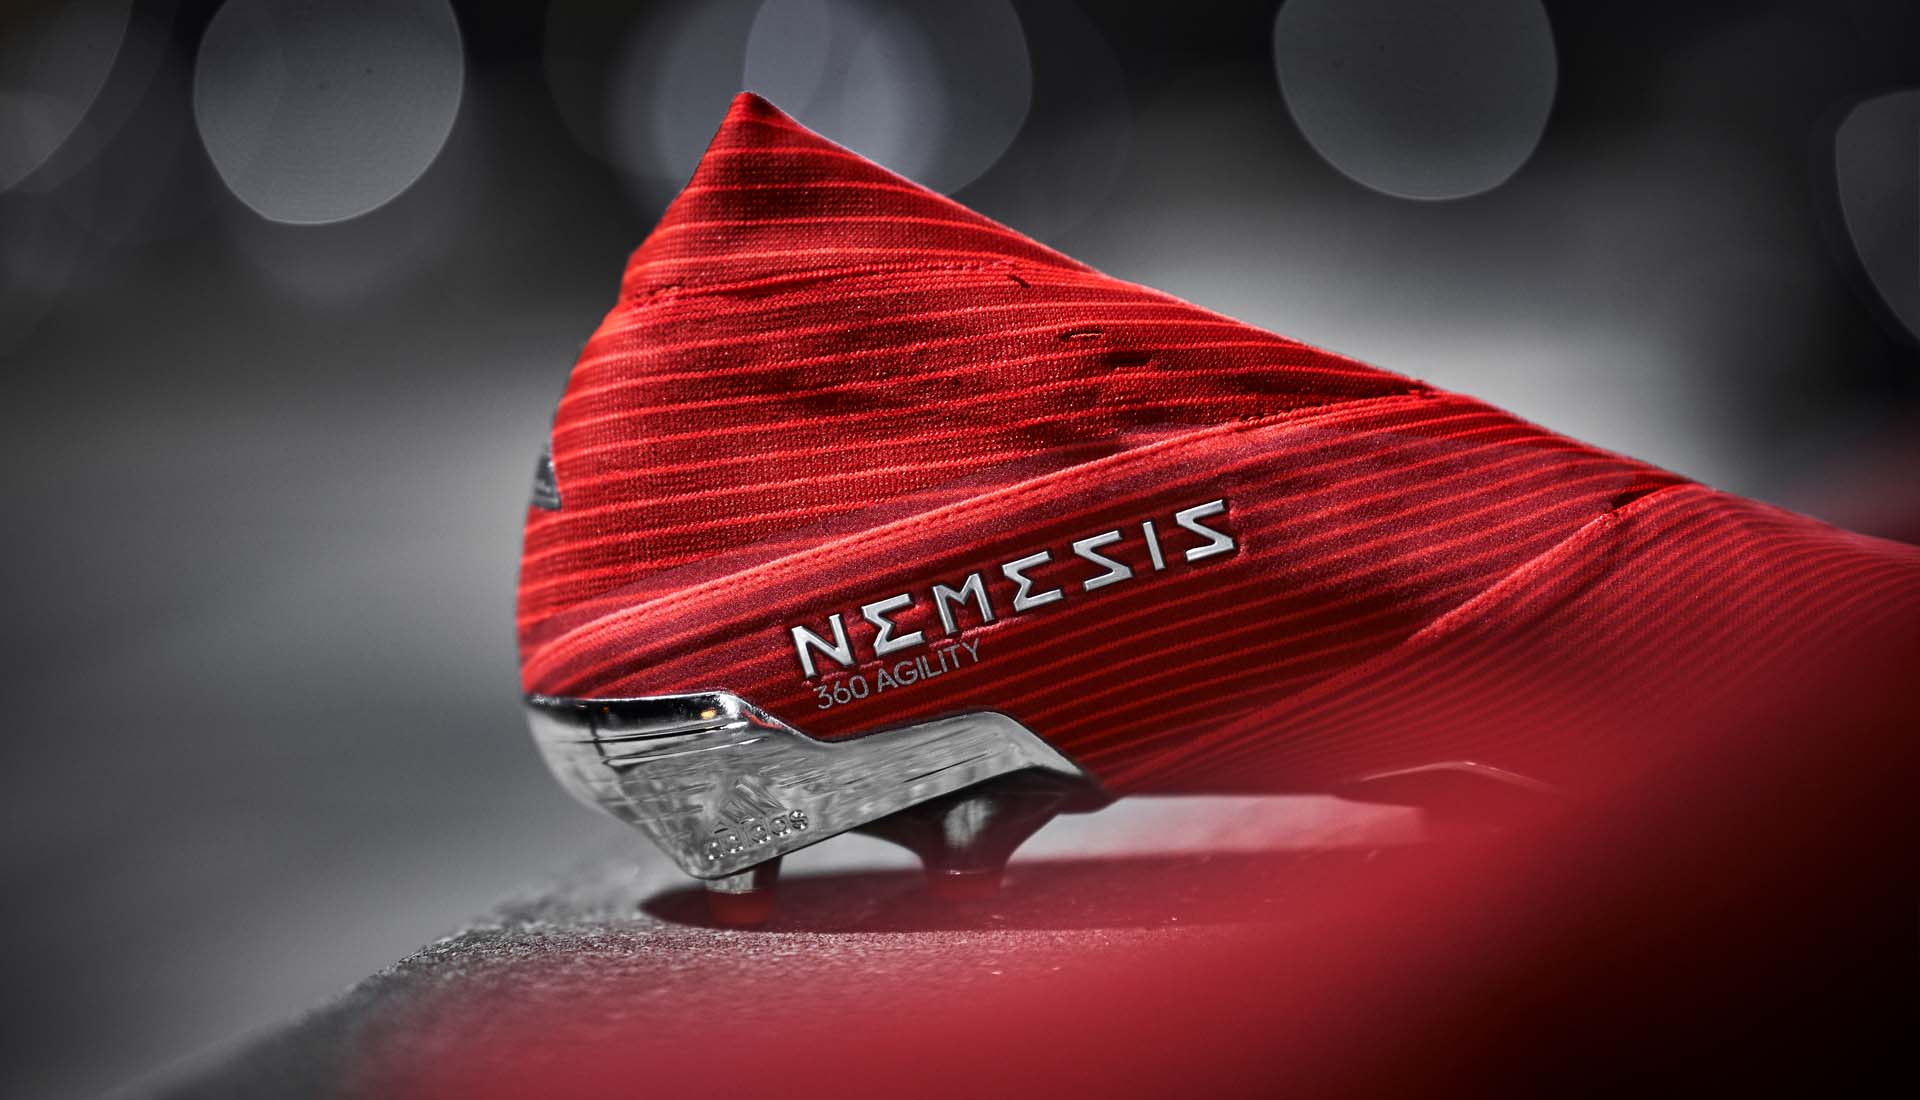 Nemeziz là dòng giày bóng đá Messi sử dụng (tuy nhiên Messi sử dụng phiên bản có dây Nemeziz 19.1)